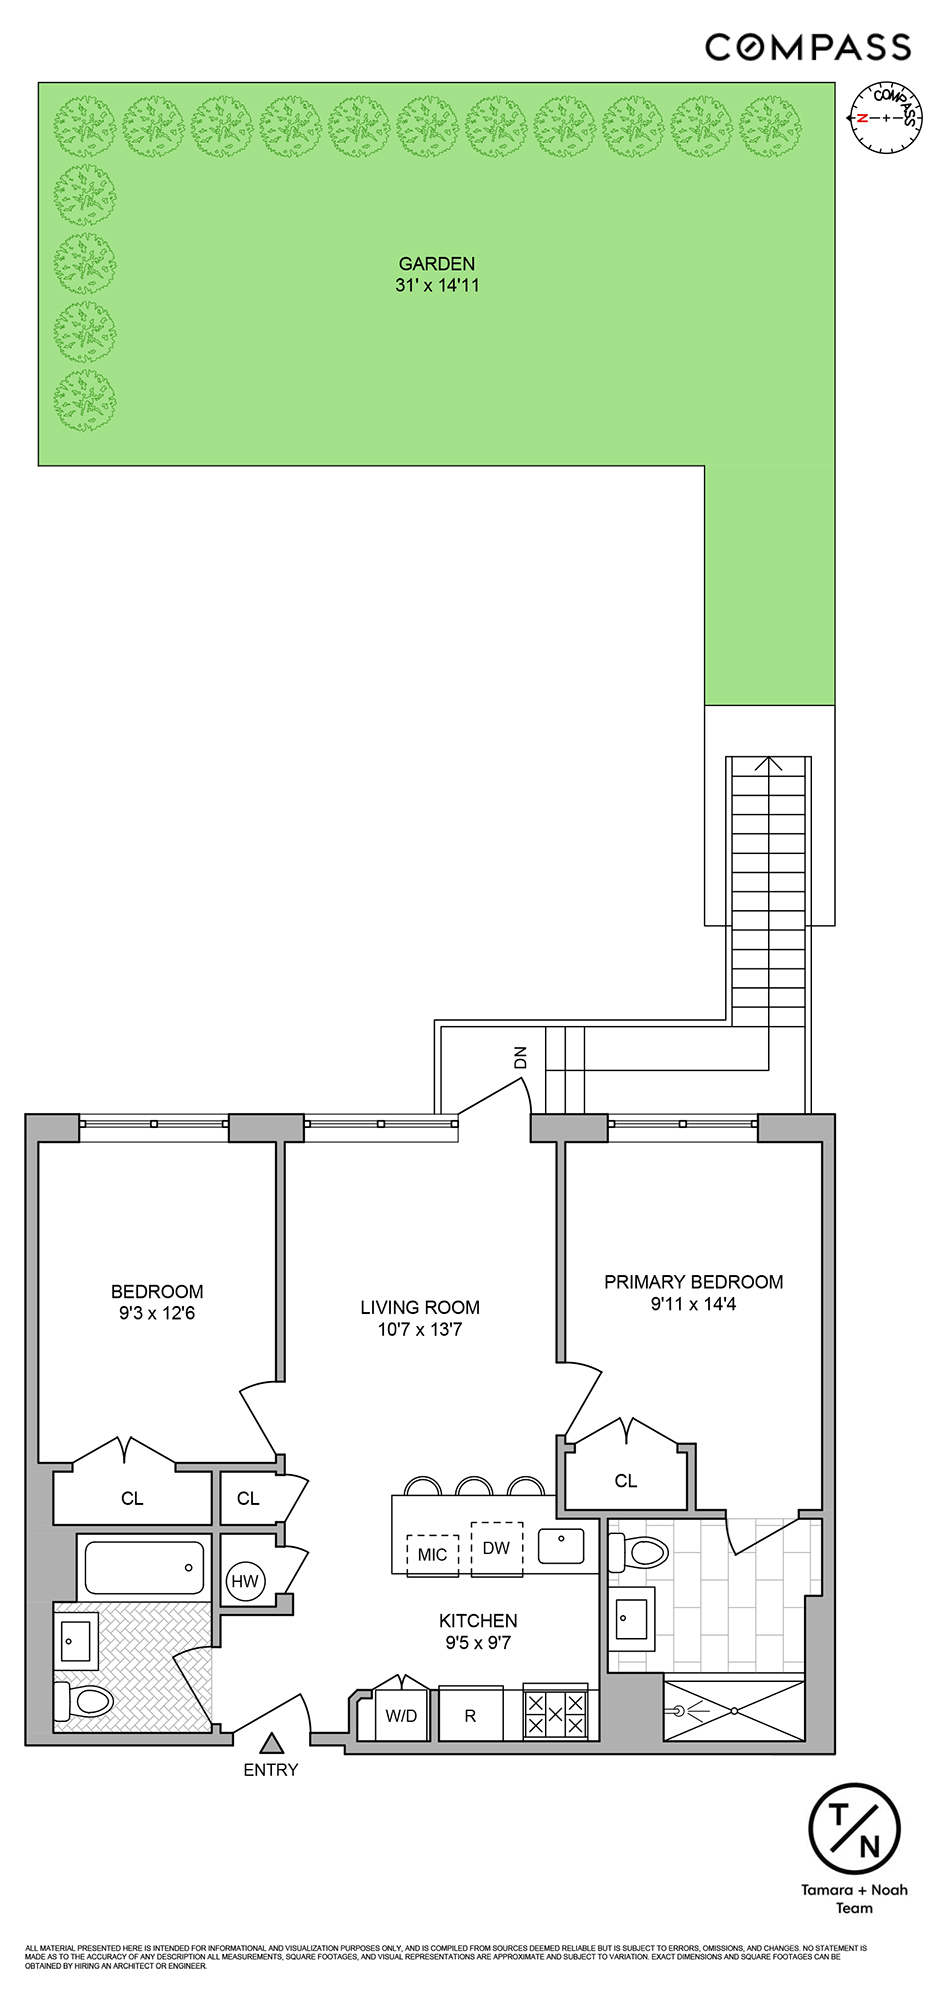 Floorplan for 35 Duffield Street, 2B